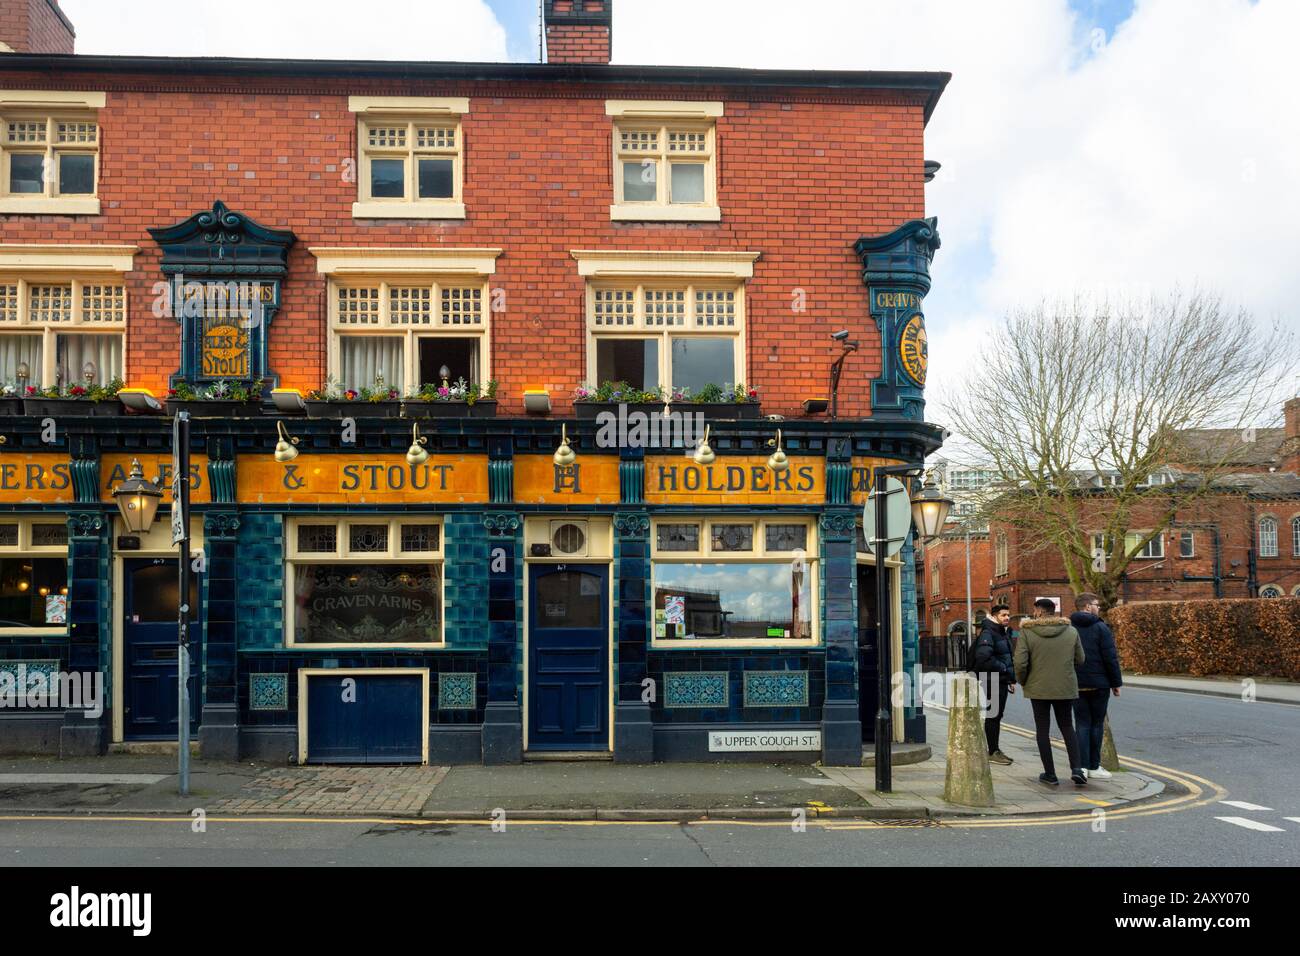 The Craven Arms pub, Birmingham city centre, UK Stock Photo